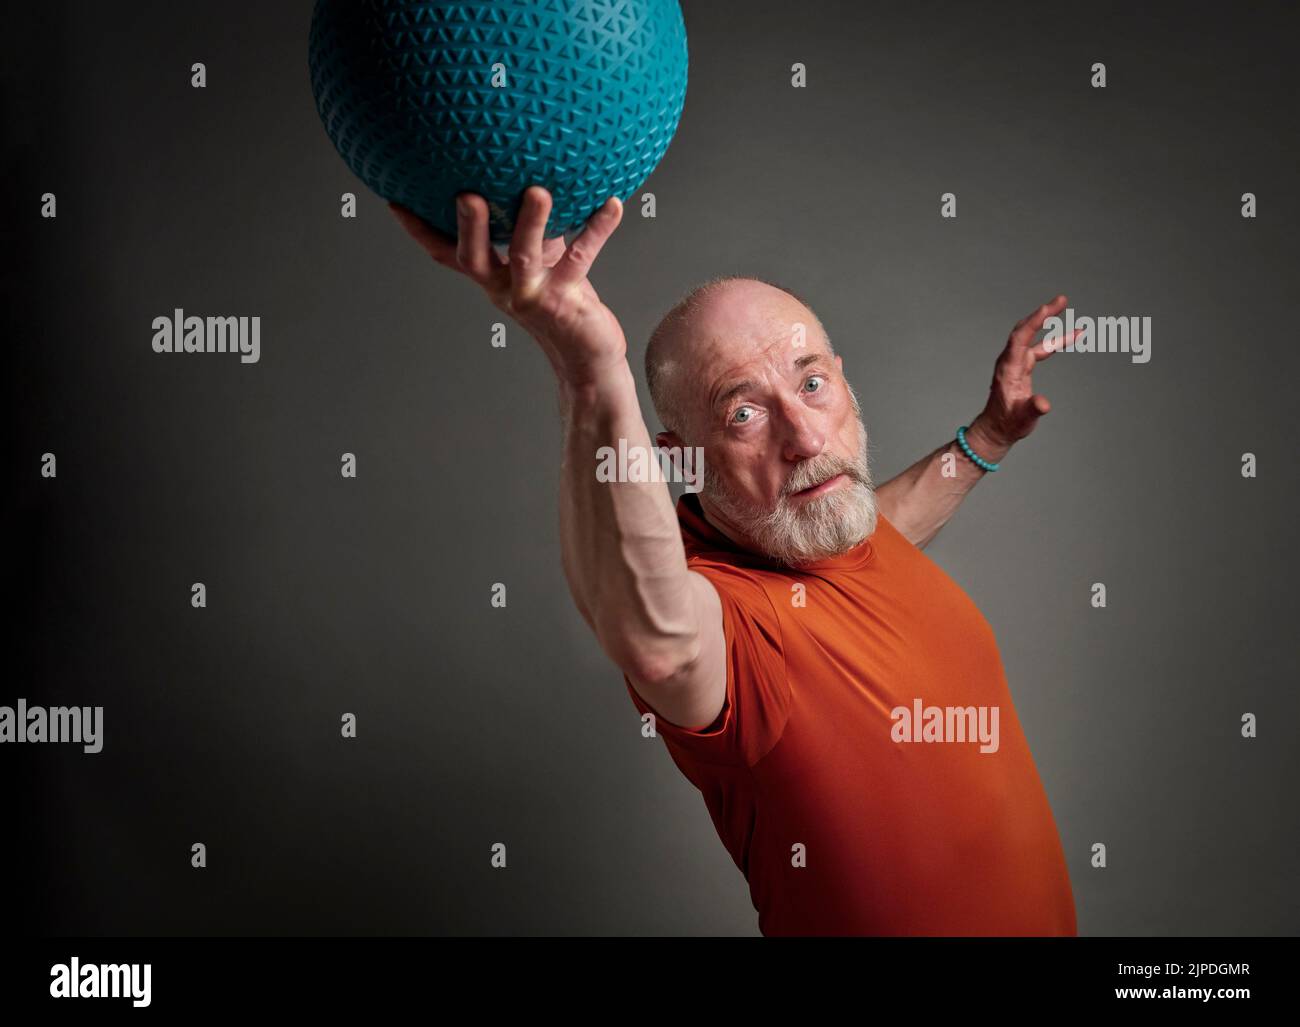 el hombre mayor (a finales de 60s) está haciendo ejercicio con una bola pesada de la slam o de la medicina, la actividad y la aptitud sobre 60 concepto Foto de stock